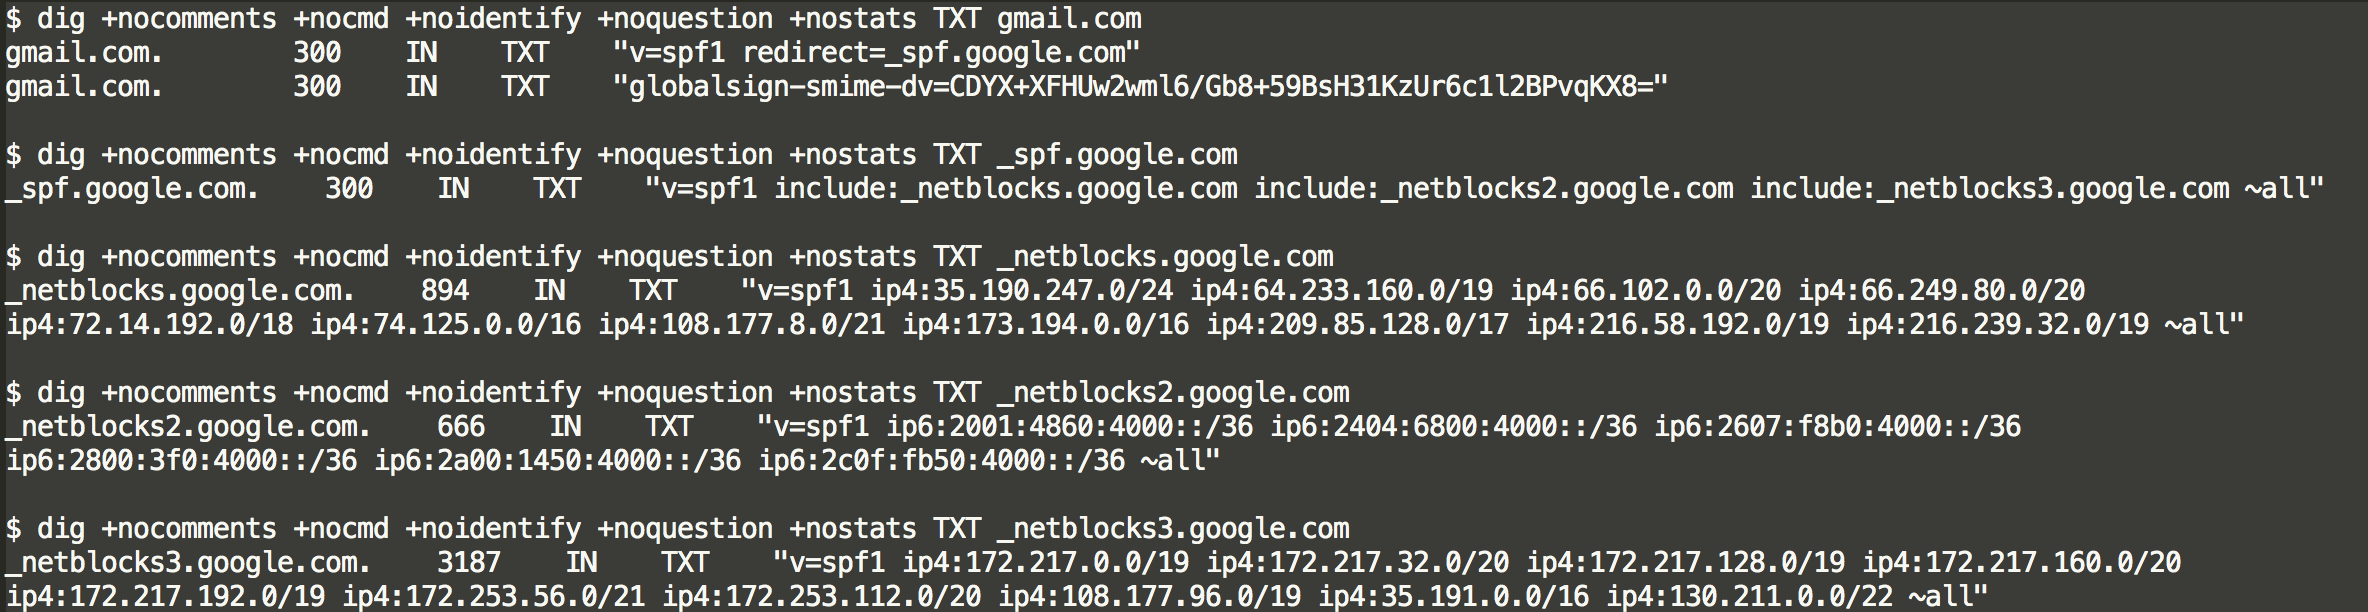 Gmail DNS